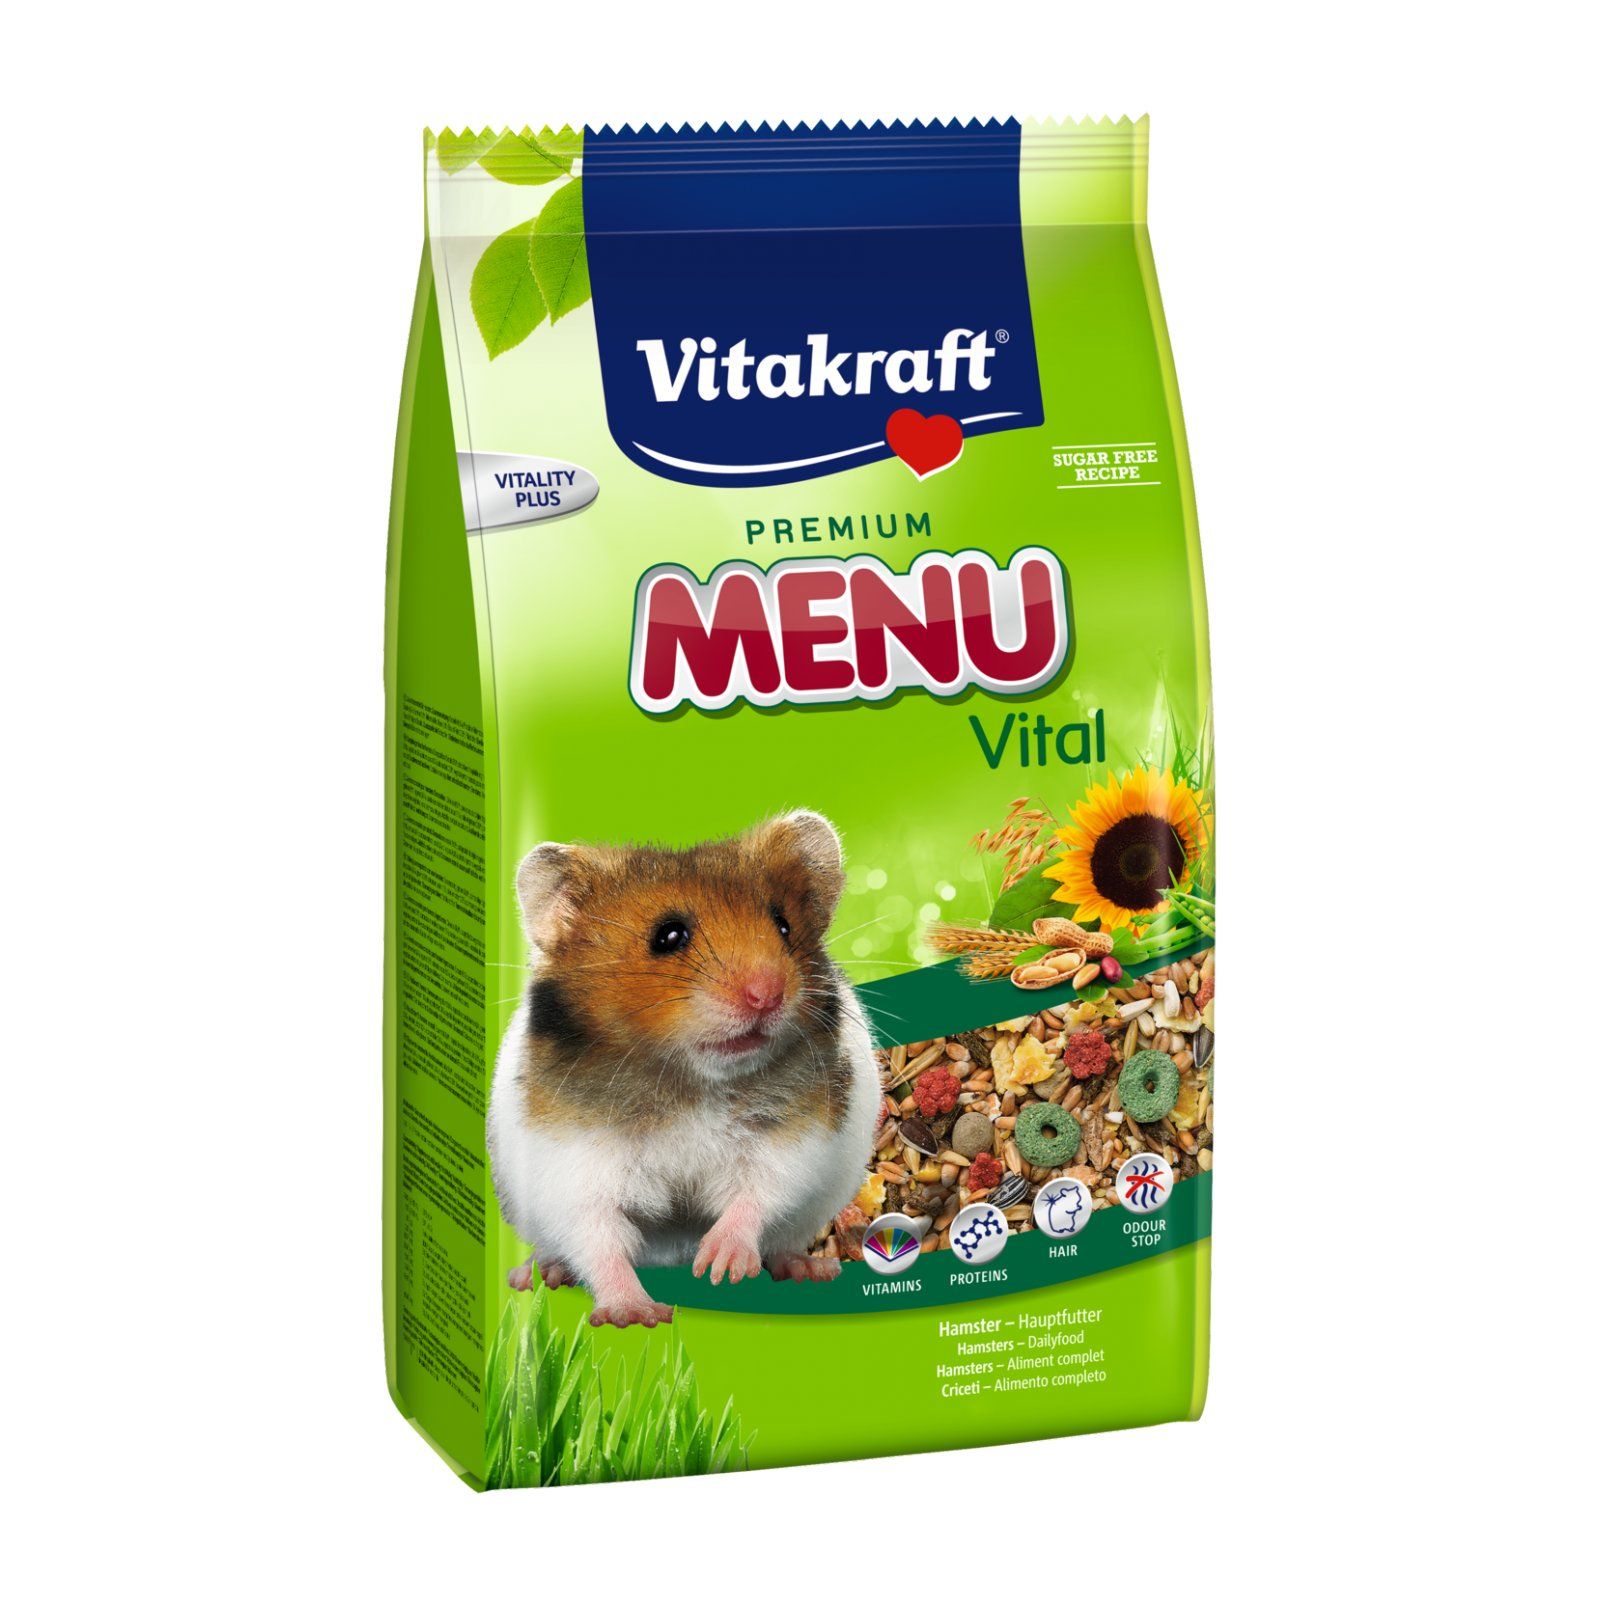 Vitakraft Premium Menü Vital für Hamster